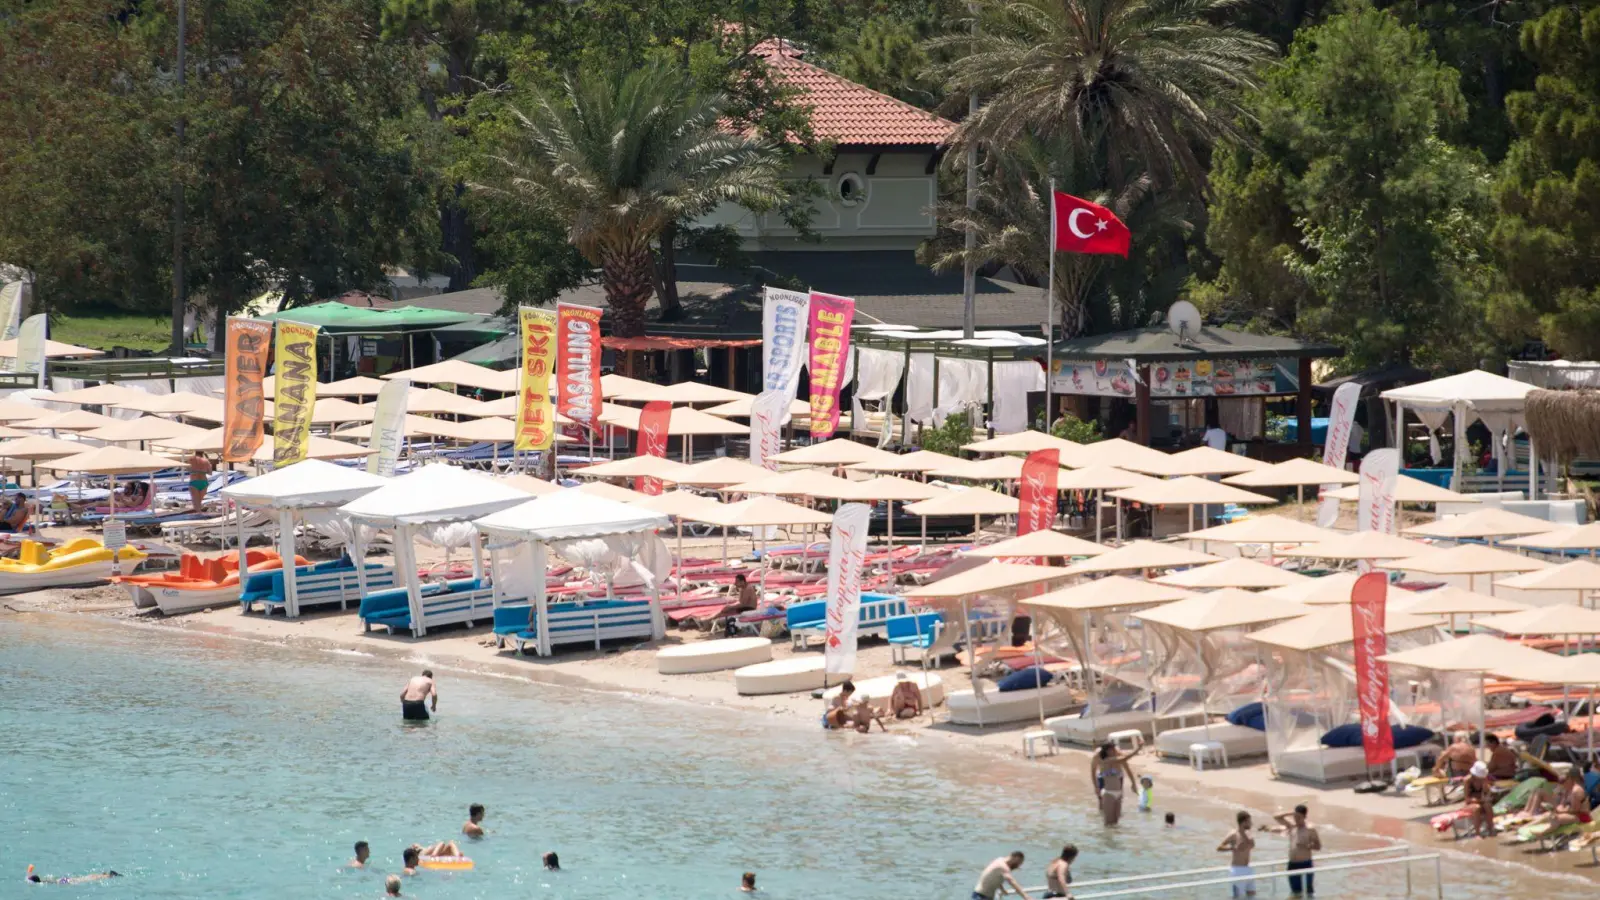 Die Türkei wird derzeit gut gebucht. Für das kommende Jahr will Tui sein Angebot in dem Land daher ausbauen. (Foto: Marius Becker/dpa)